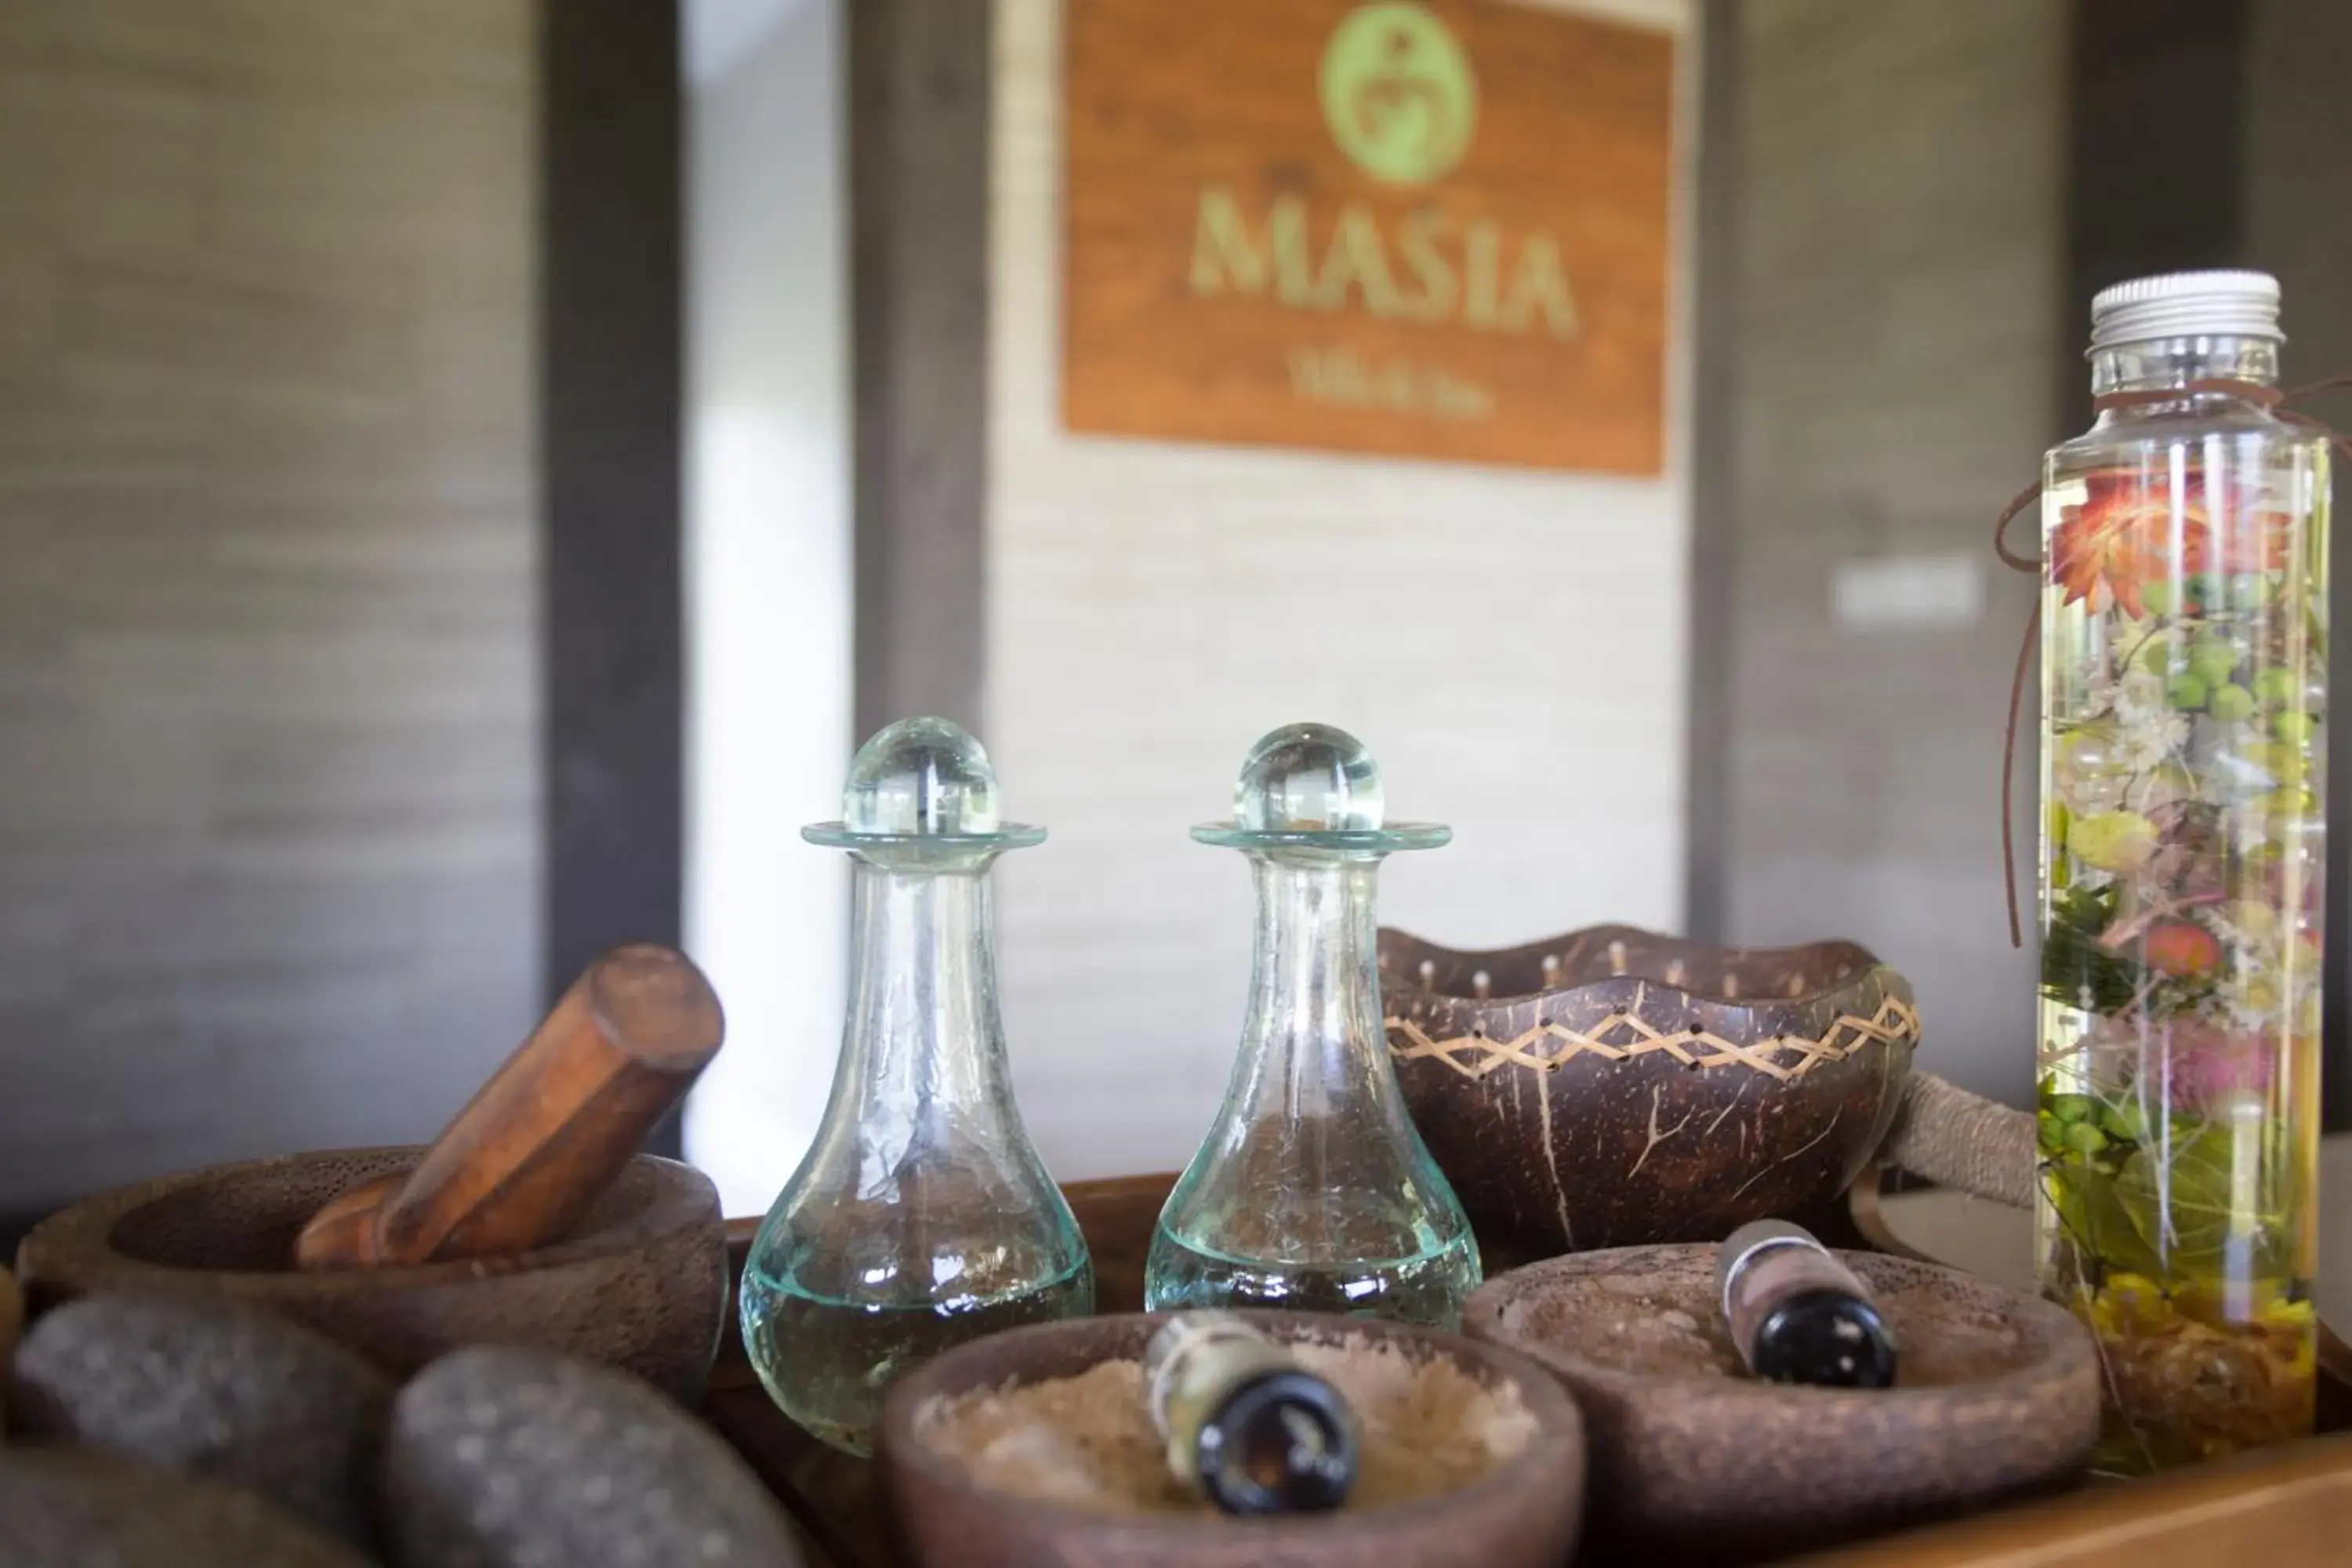 Spa and wellness centre/facilities in Masia Villa